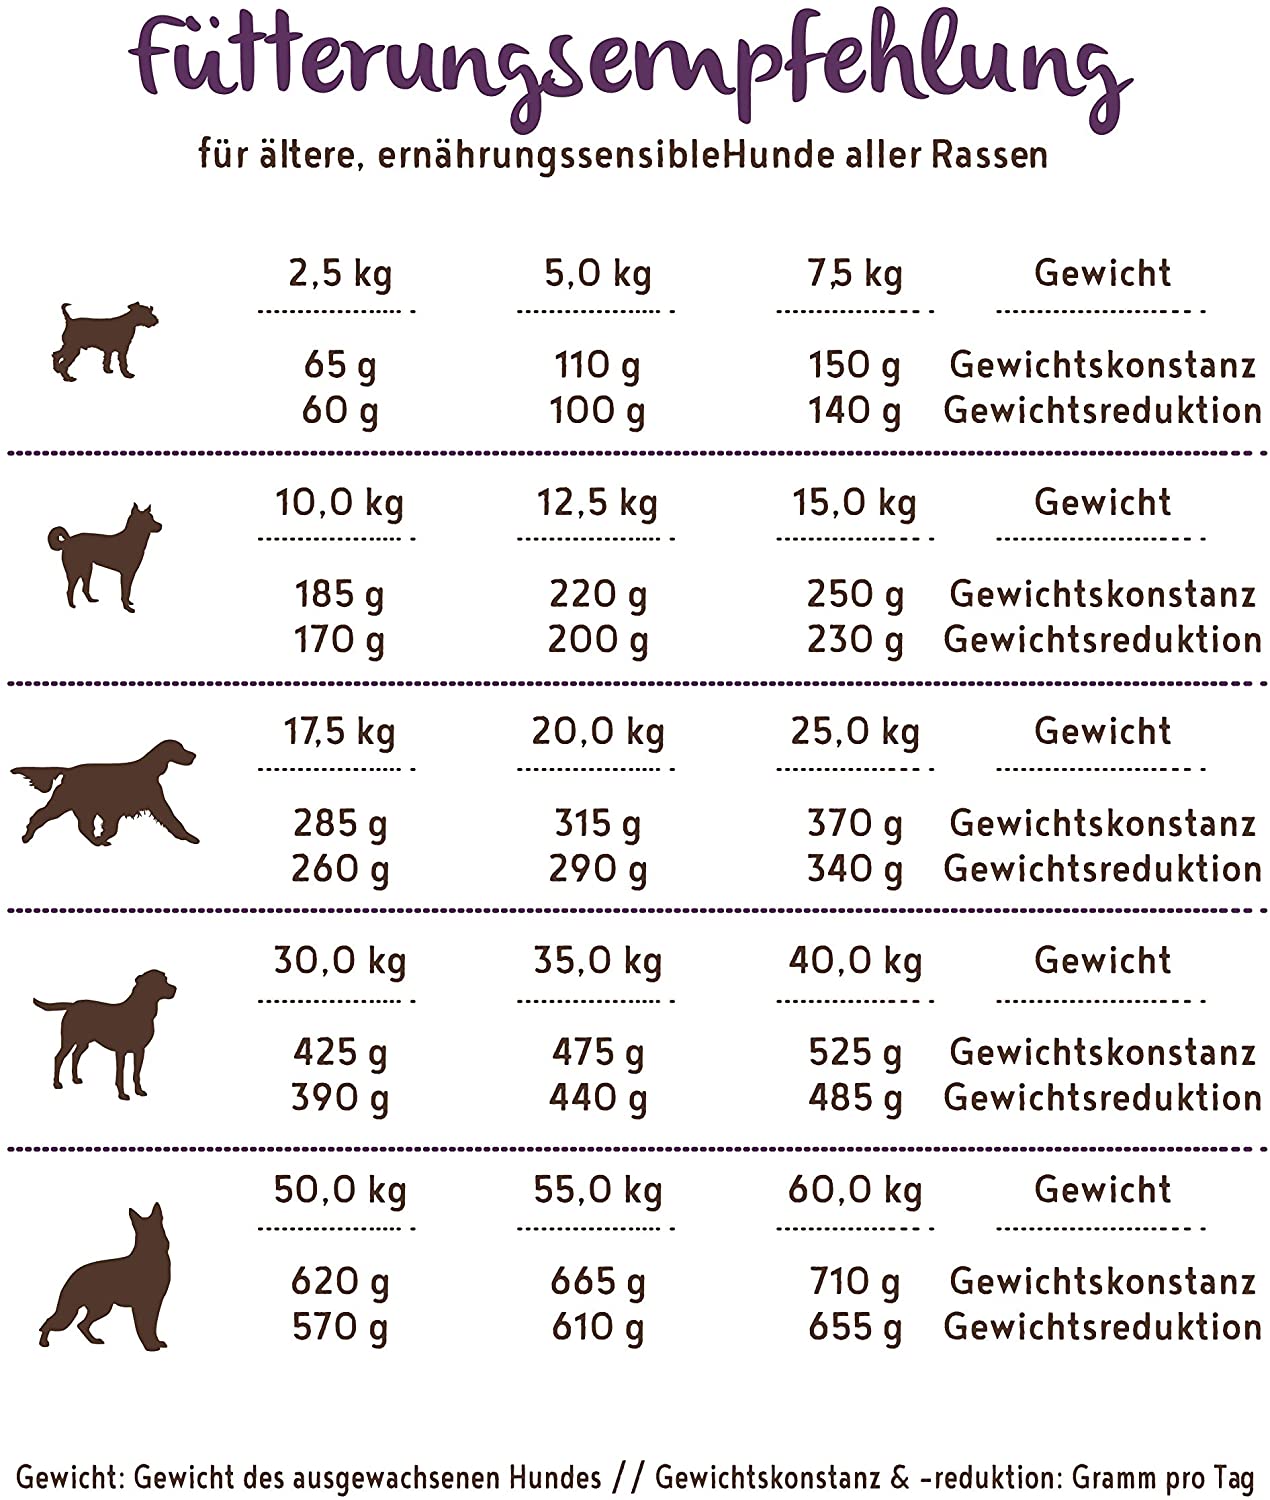  bosch HPC SOFT Senior | Cabra y Patata | comida semihúmeda para perros mayores de todas las razas y perros sensibles desde el punto de vista nutricional | Single Protein | Sin Cereales | 2,5 kg 